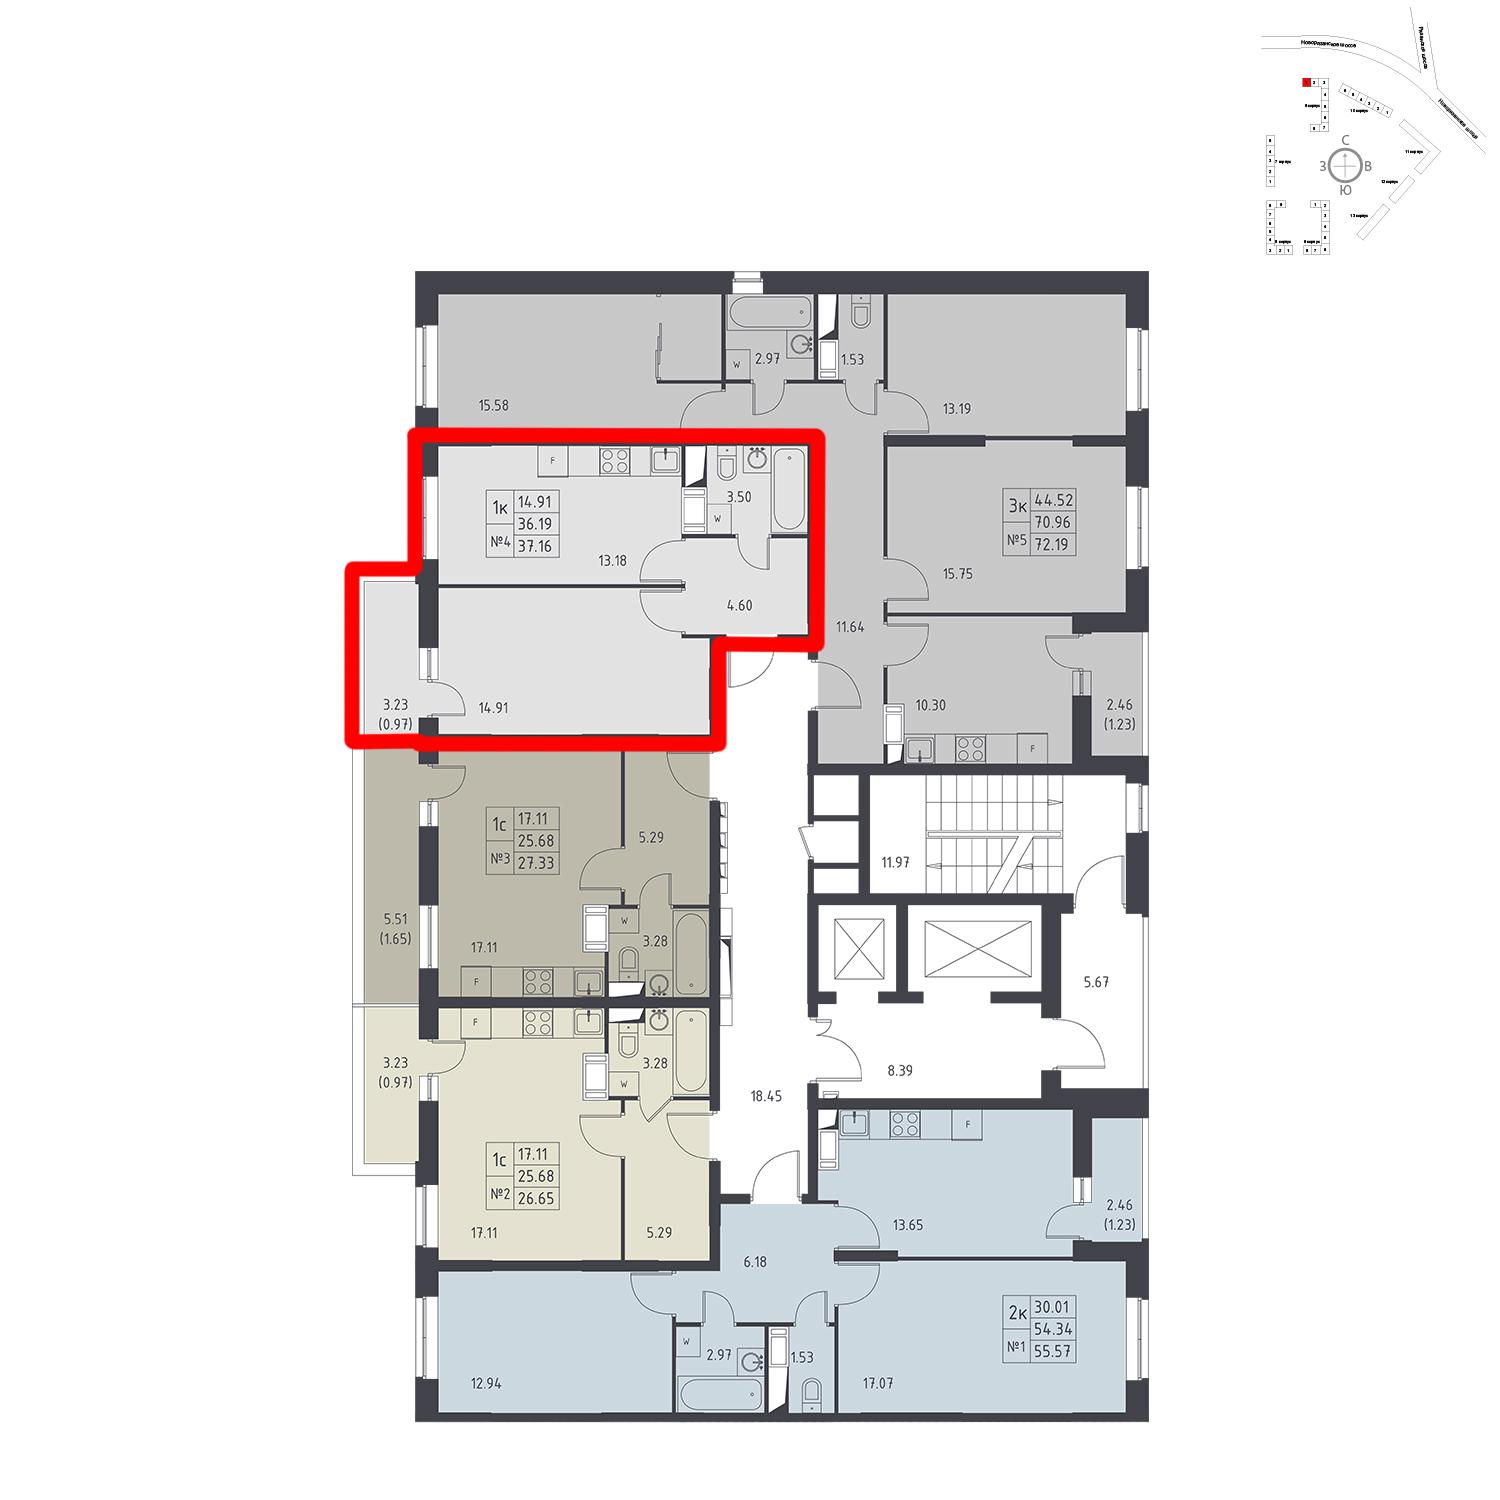 Продаётся 1-комнатная квартира в новостройке 37.2 кв.м. этаж 17/17 за 4 330 887 руб 